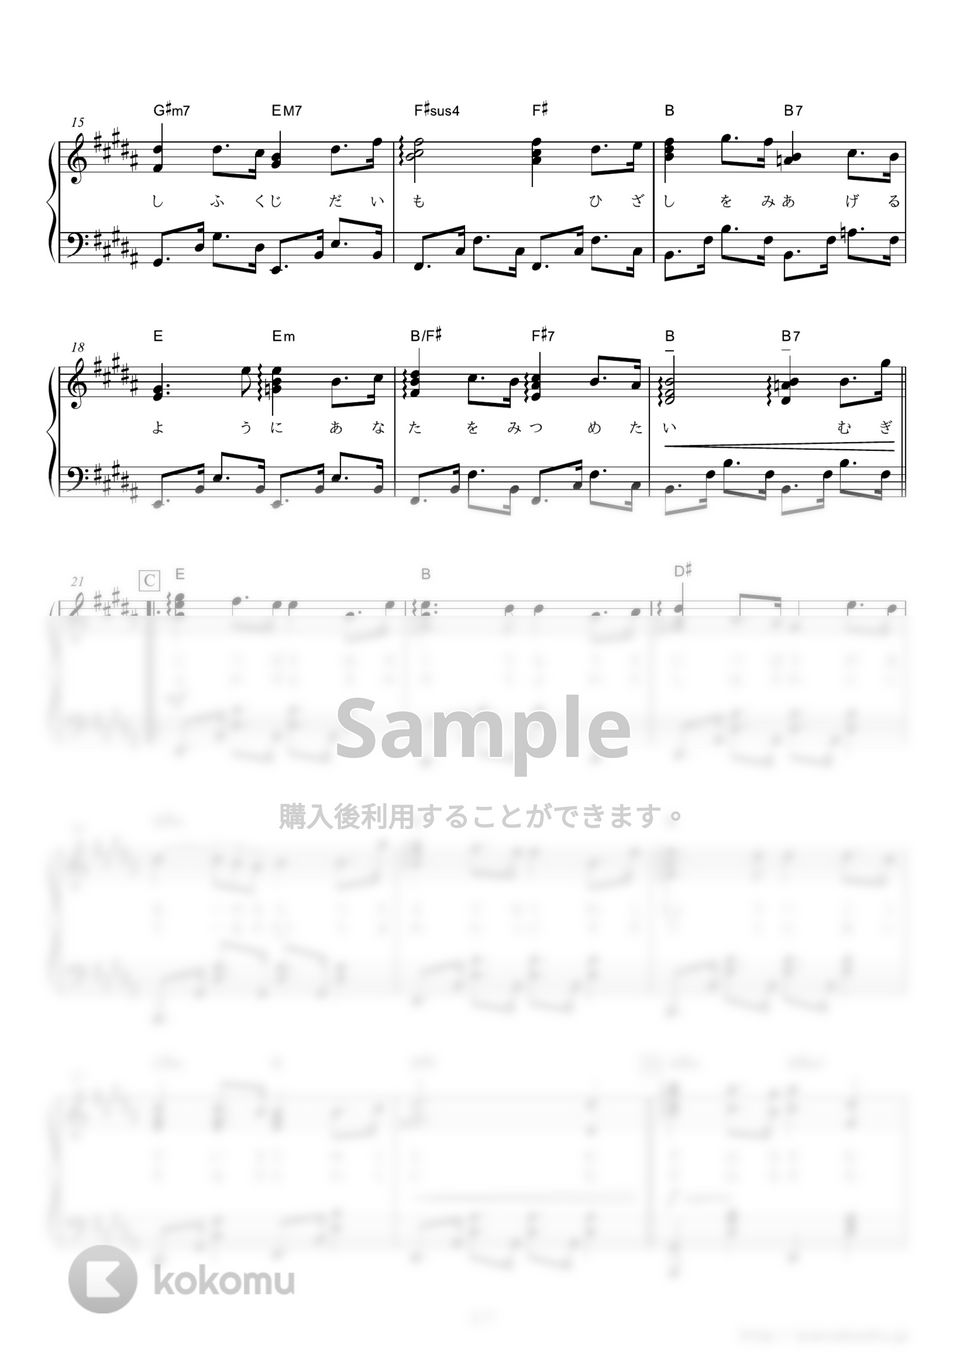 中島みゆき - 麦の唄 (NHK連続テレビ小説『マッサン』主題歌) by ピアノの本棚